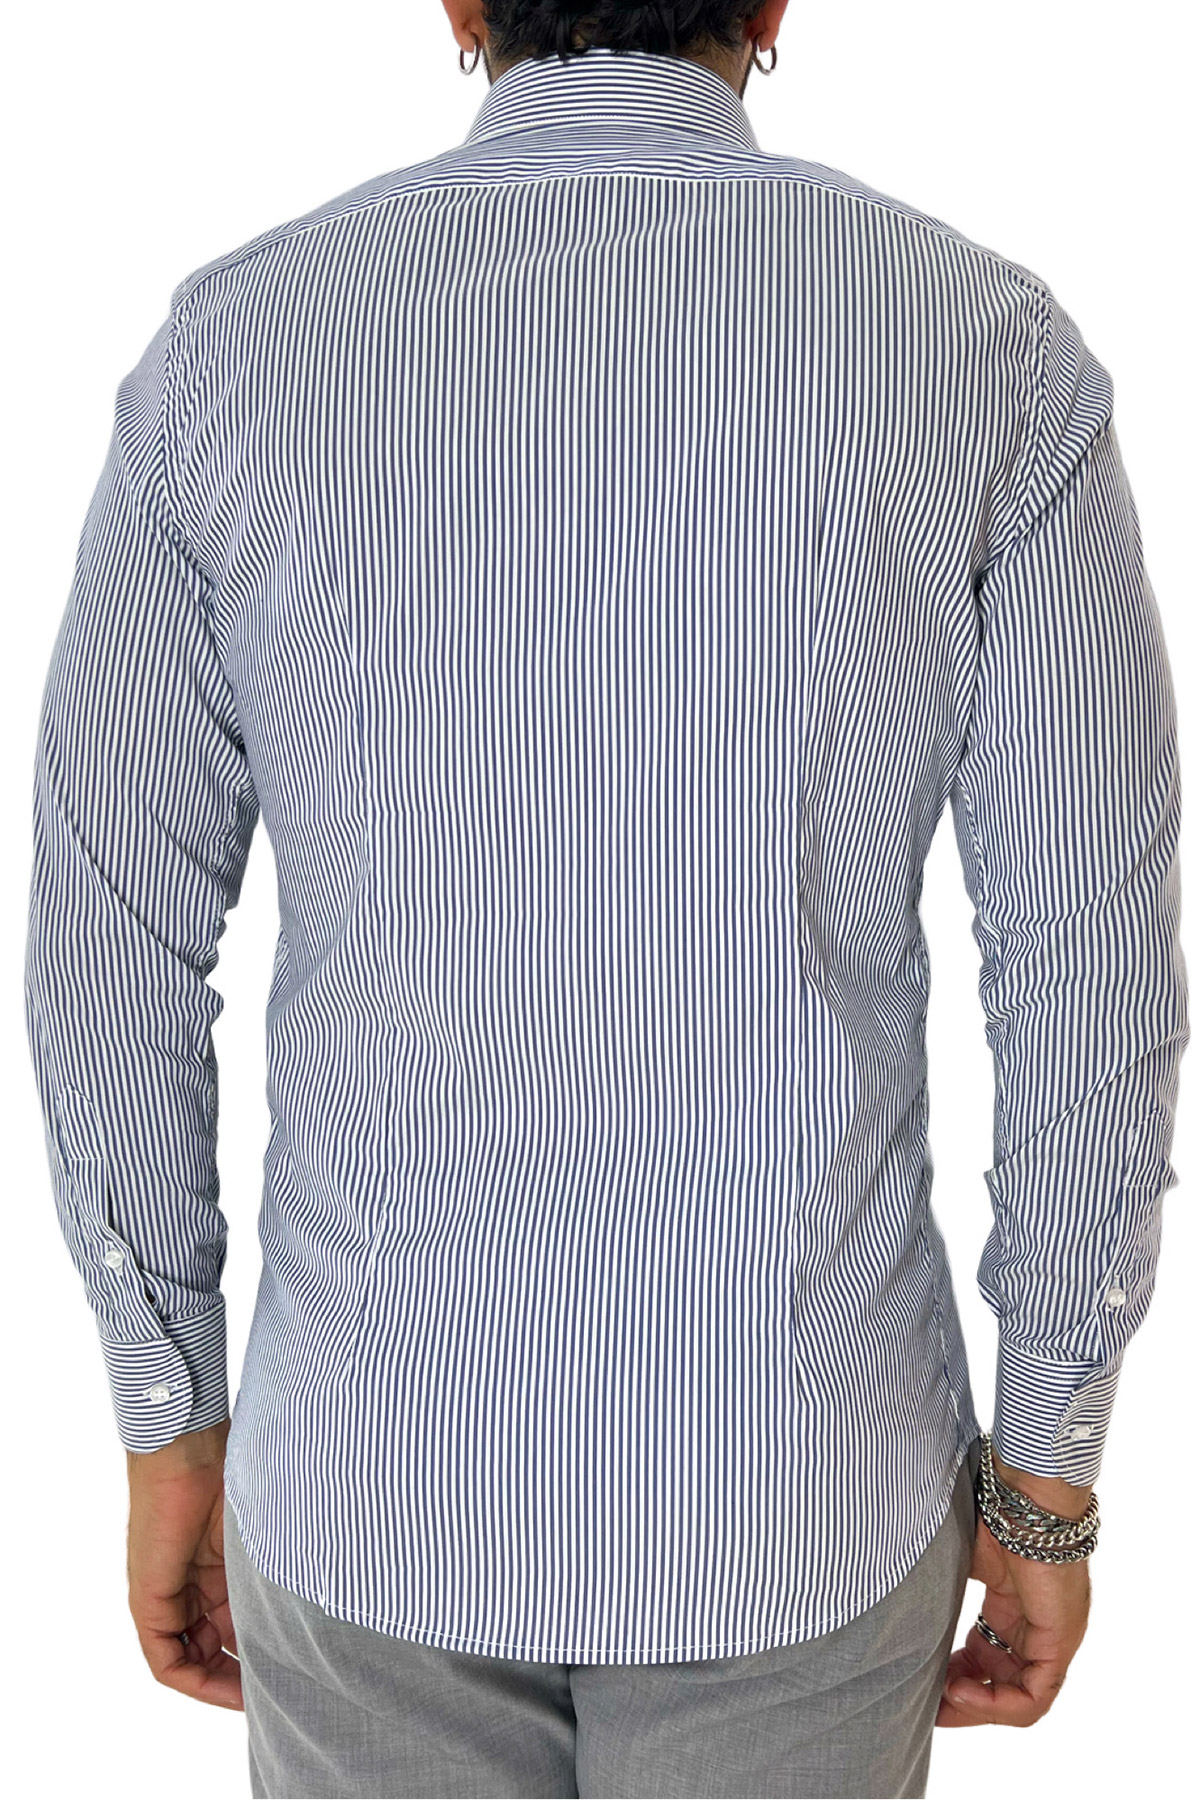 Camicia Uomo riga larga 100% cotone collo semi francese Regular Fit made in italy Casual e Elegante